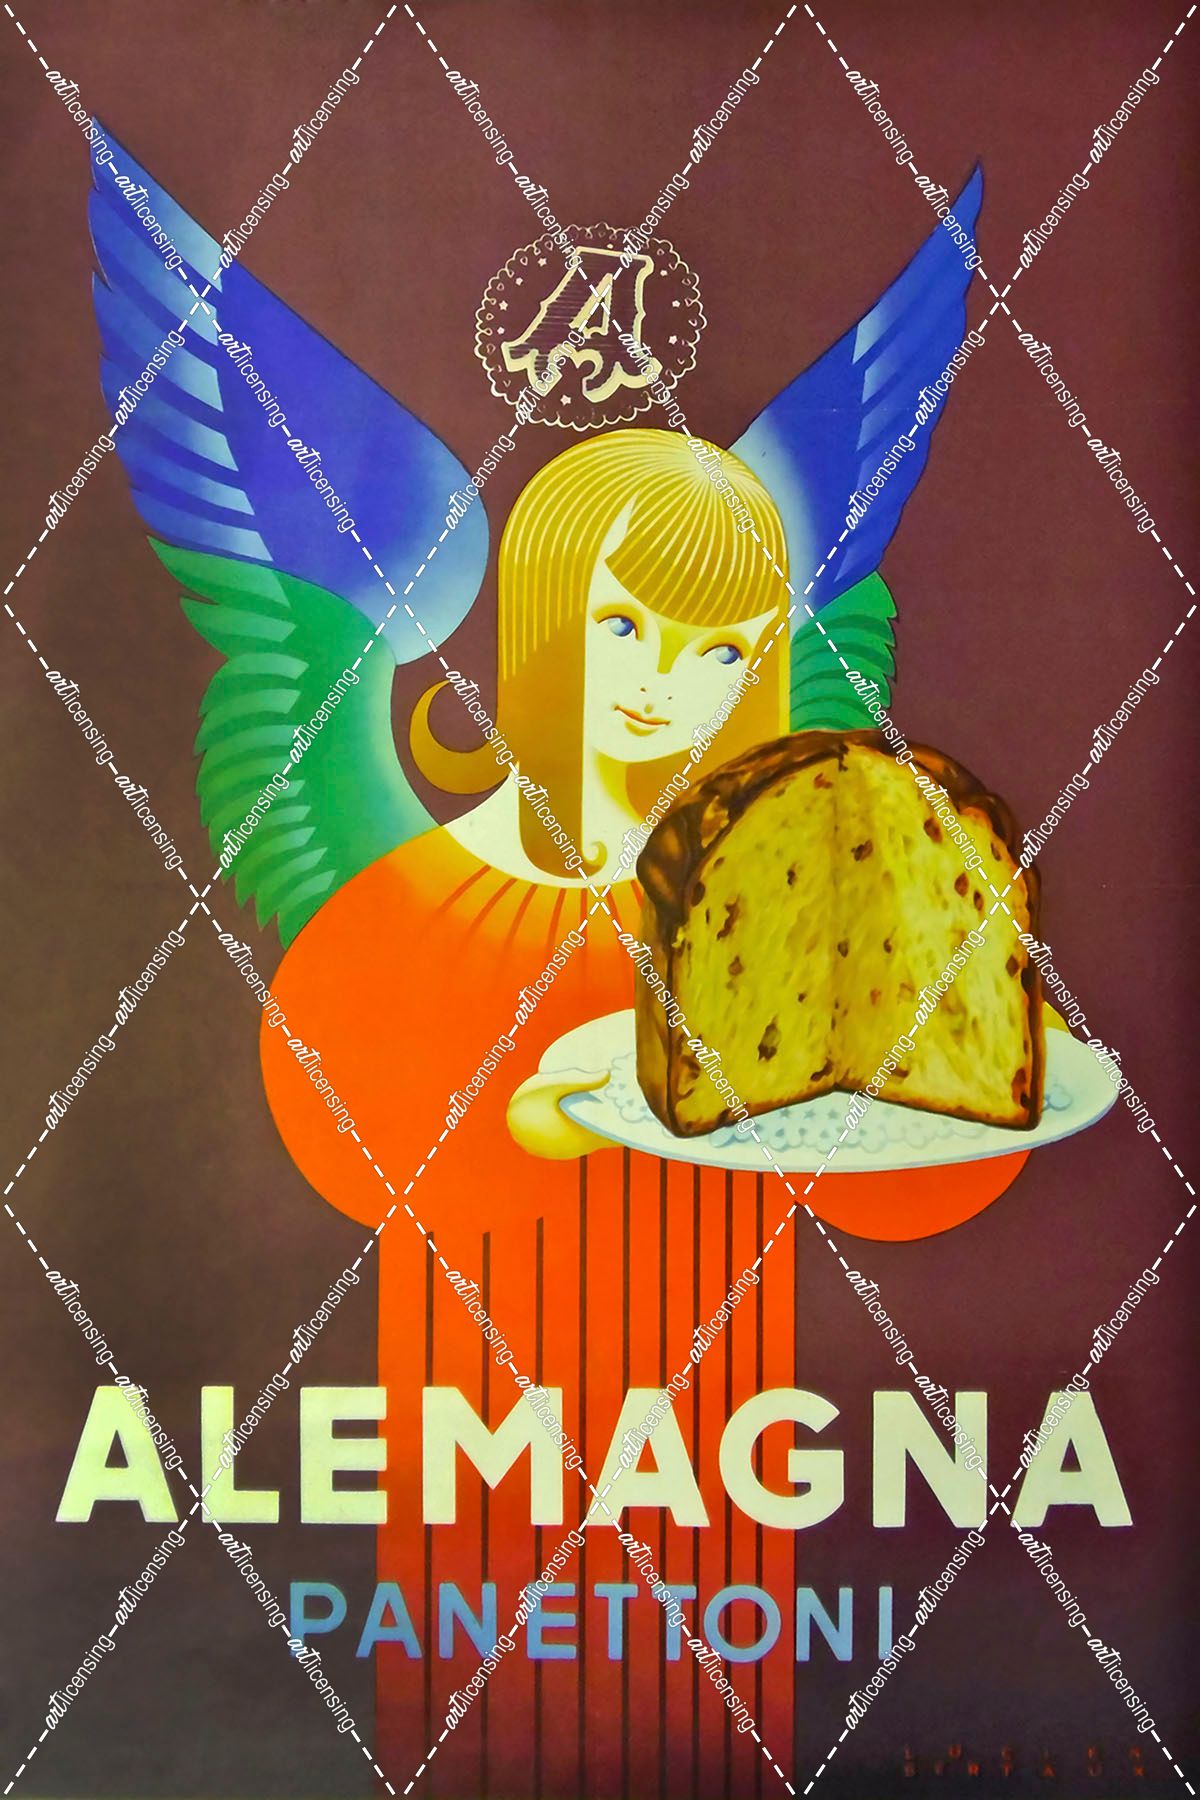 Alemagna Bread